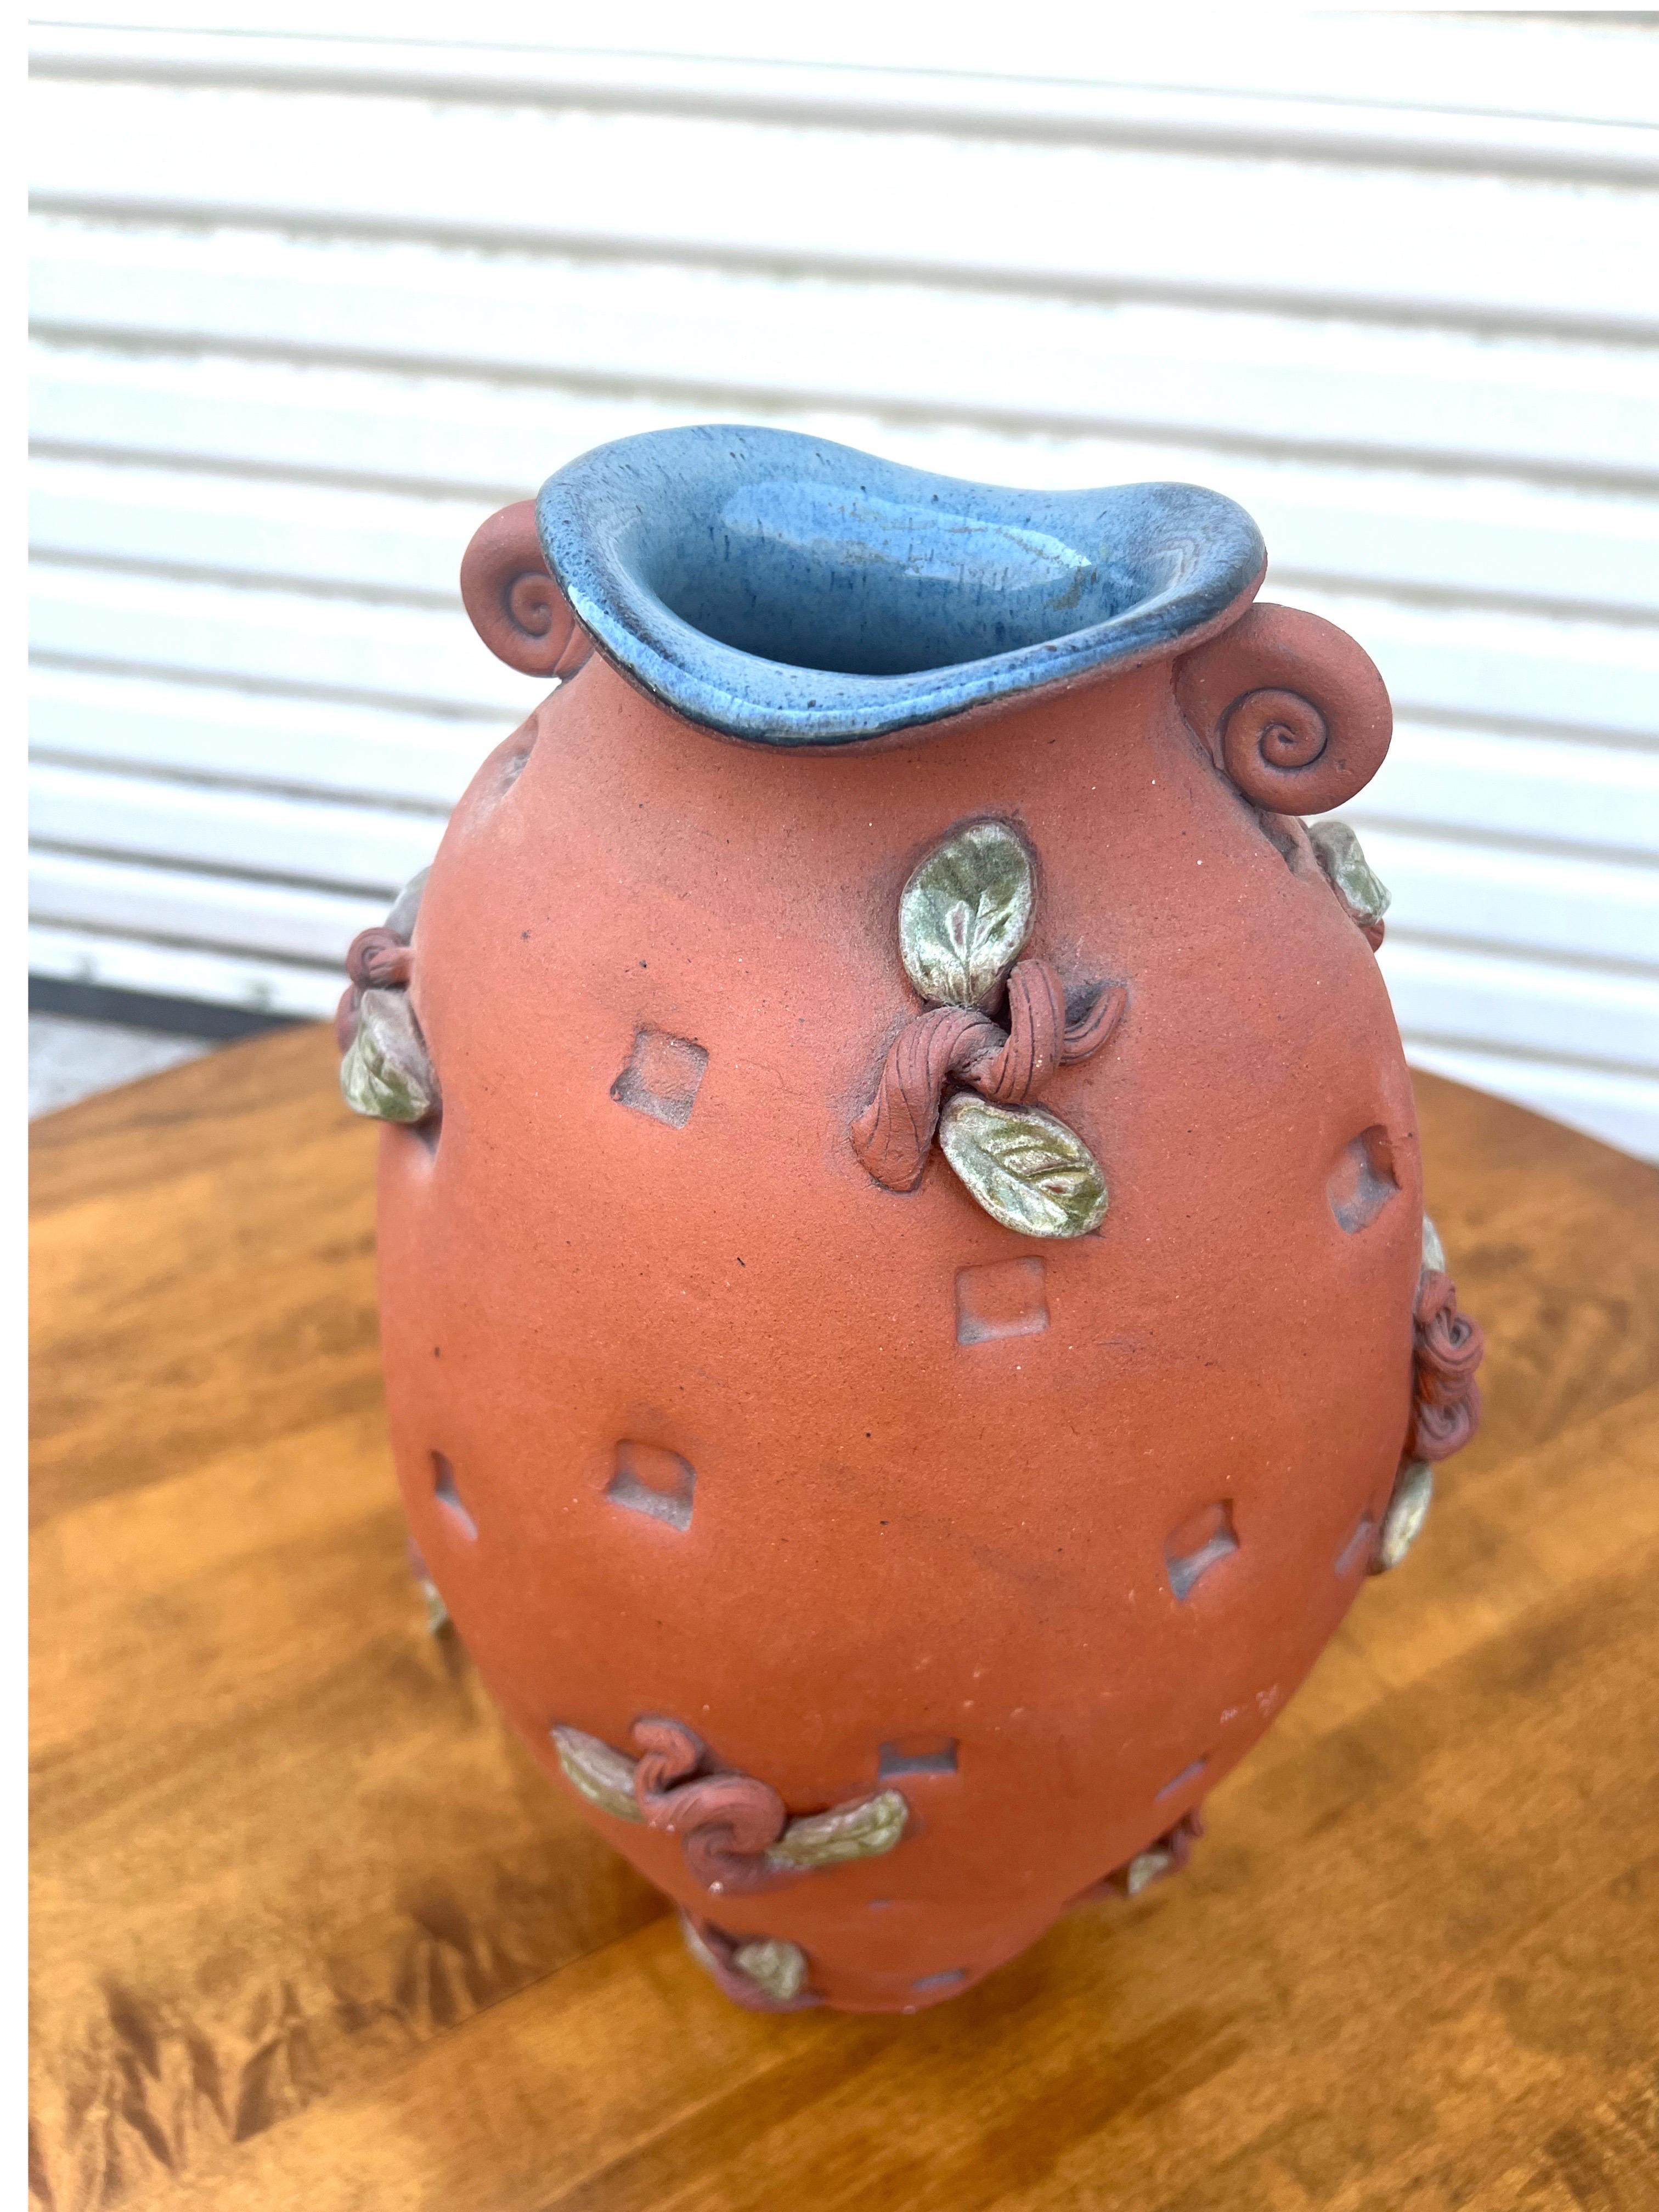 Ce superbe vase en terre cuite de studio pottery présente de belles feuilles et tiges appliquées.  L'intérieur du vase est recouvert d'une belle glaçure bleue, ce qui crée un joli contraste.